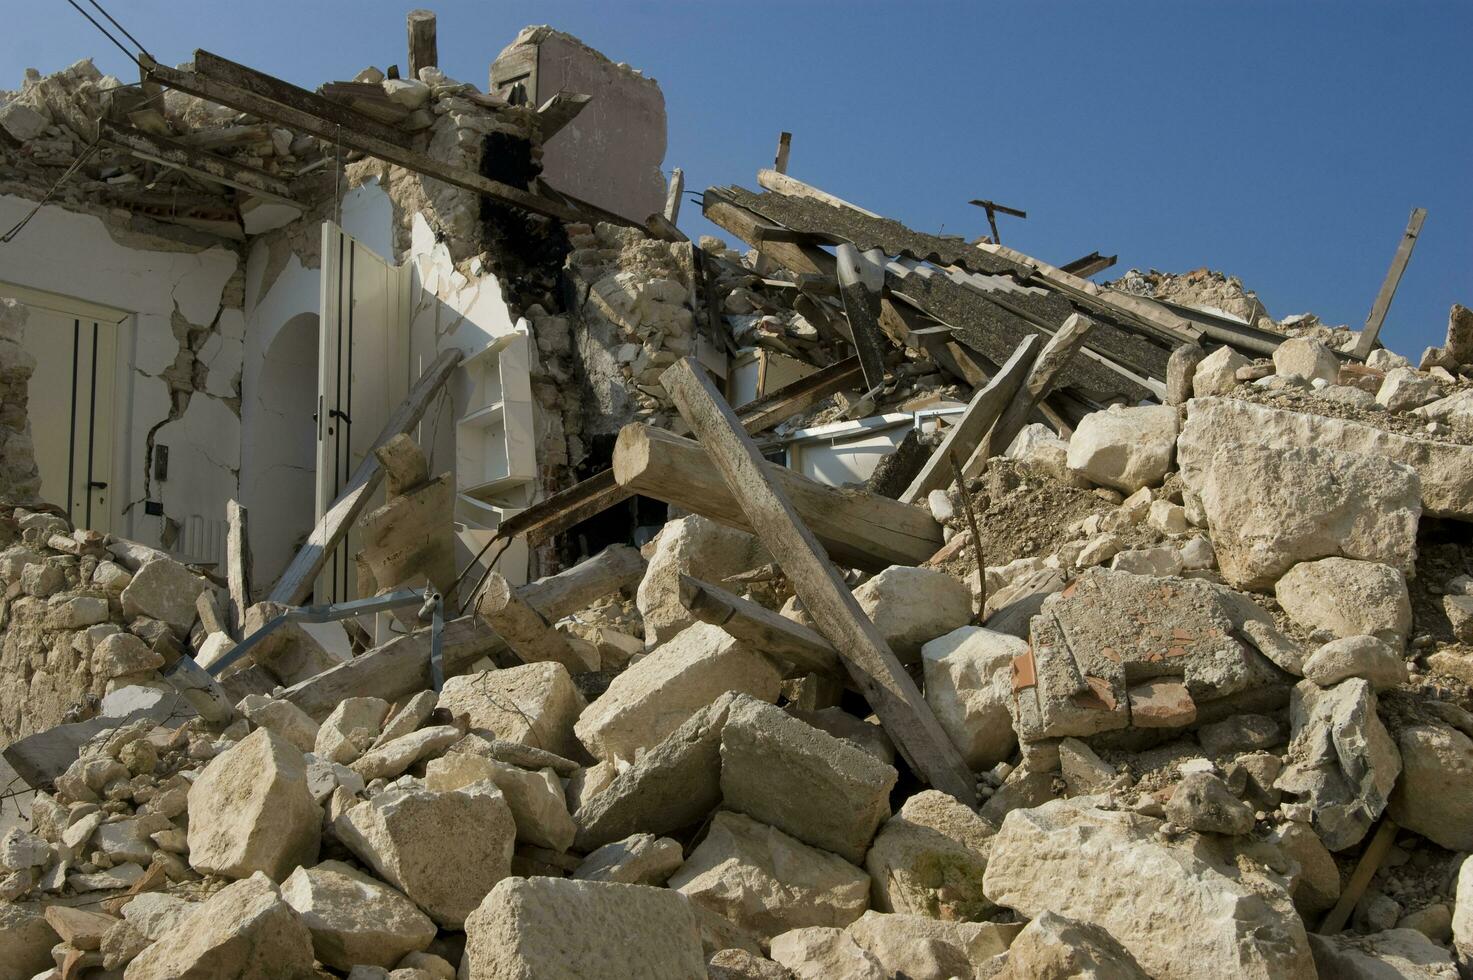 documentazione fotografica del devastante terremoto nell'Italia centrale foto